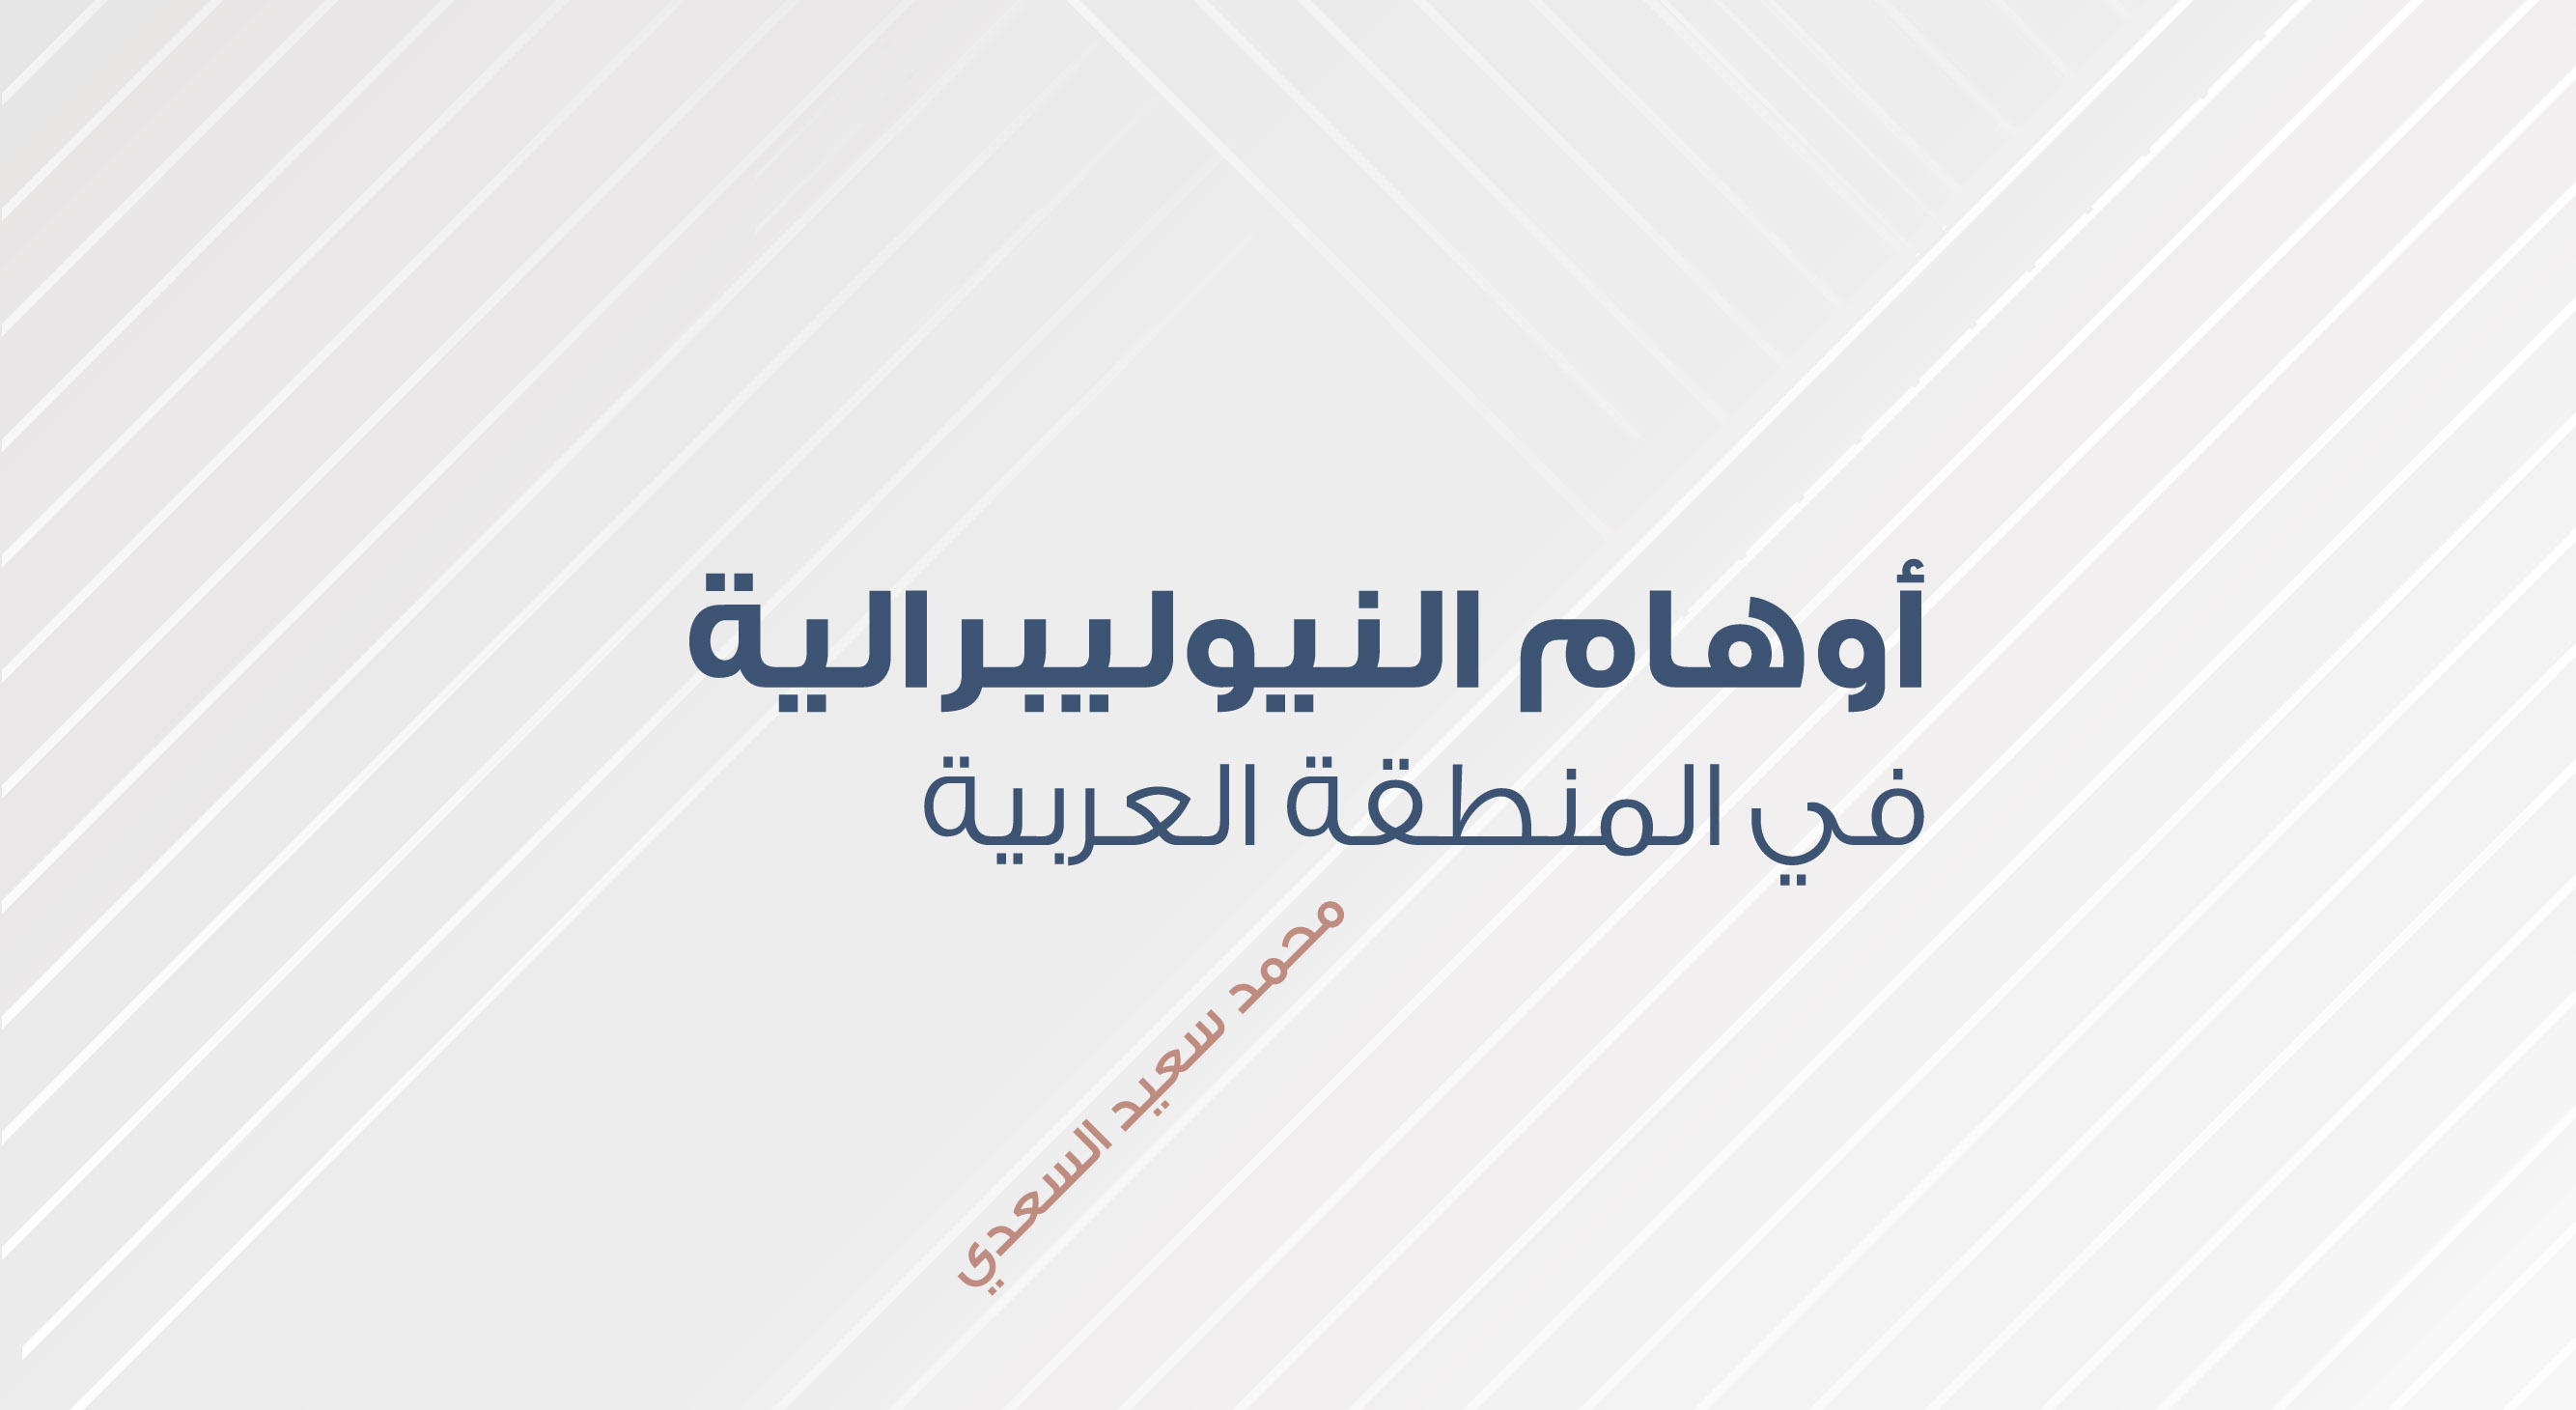 أوهام النيوليبرالية في المنطقة العربية - محمد سعيد السعدي